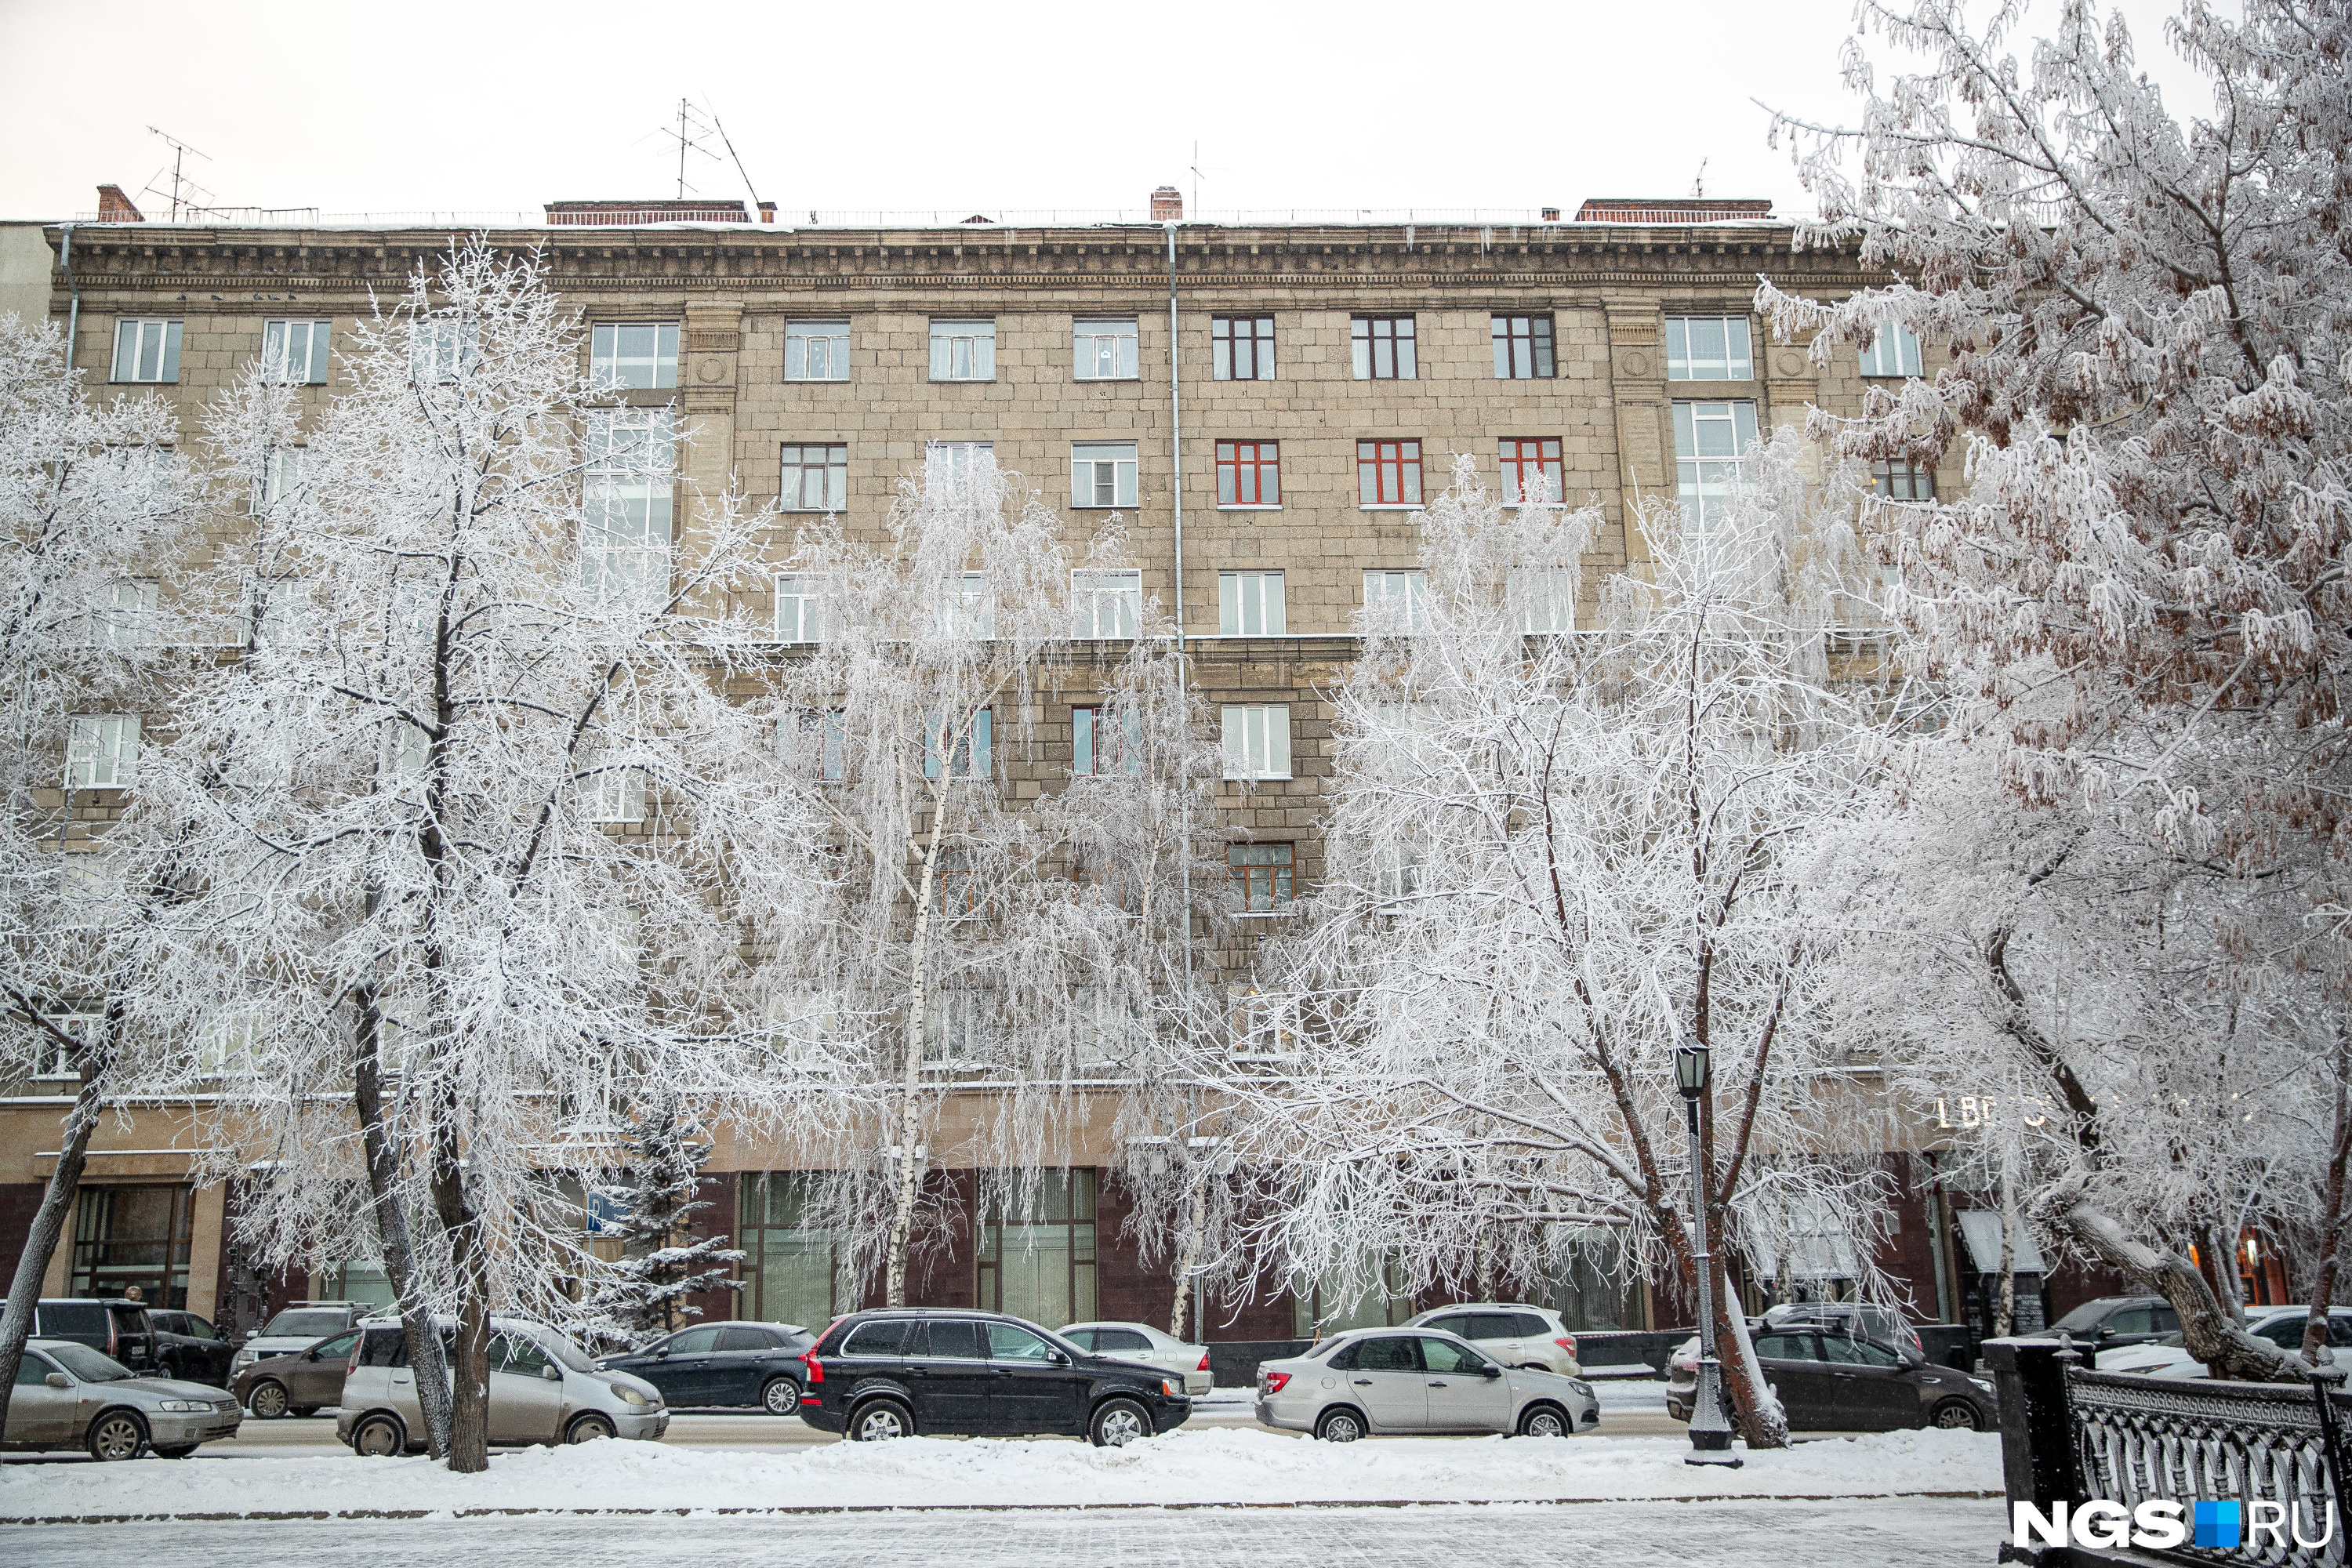 Новосибирск погода зимой. Погода в Новосибе снег. Прогноз погоды снегопад.